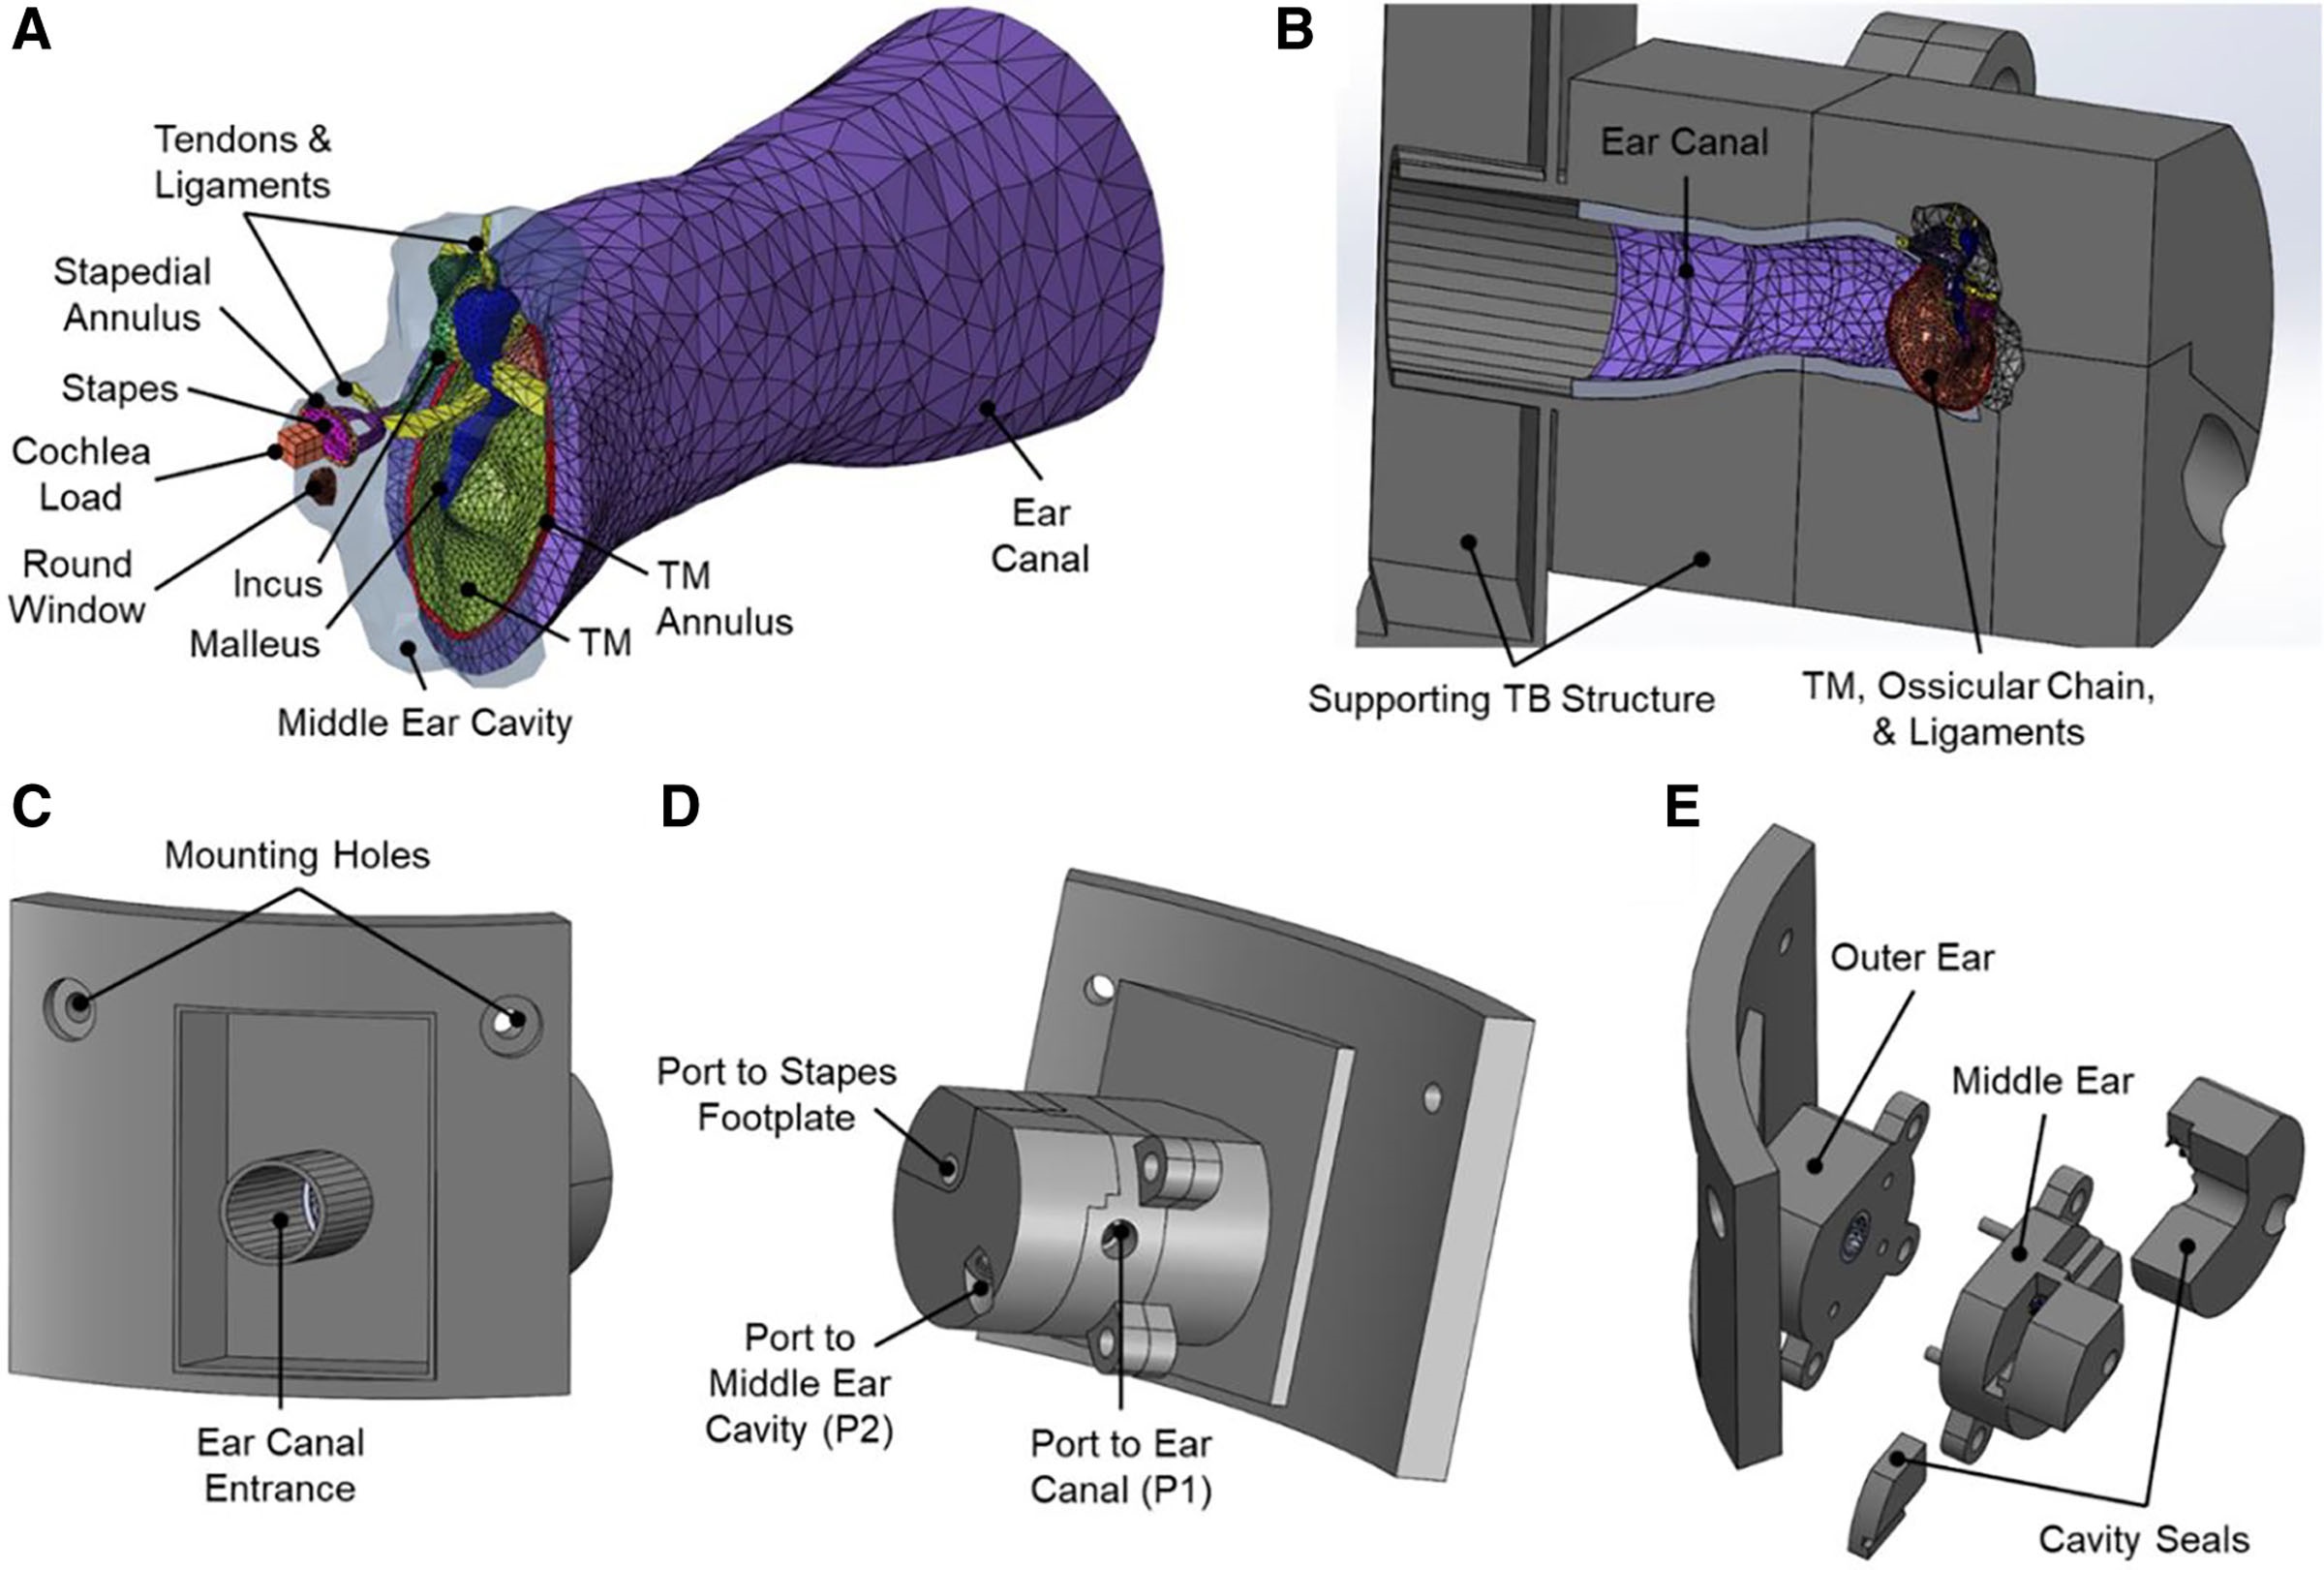 CAD models of the 3D printed ear model. Image via Otology & Neurotology Open.